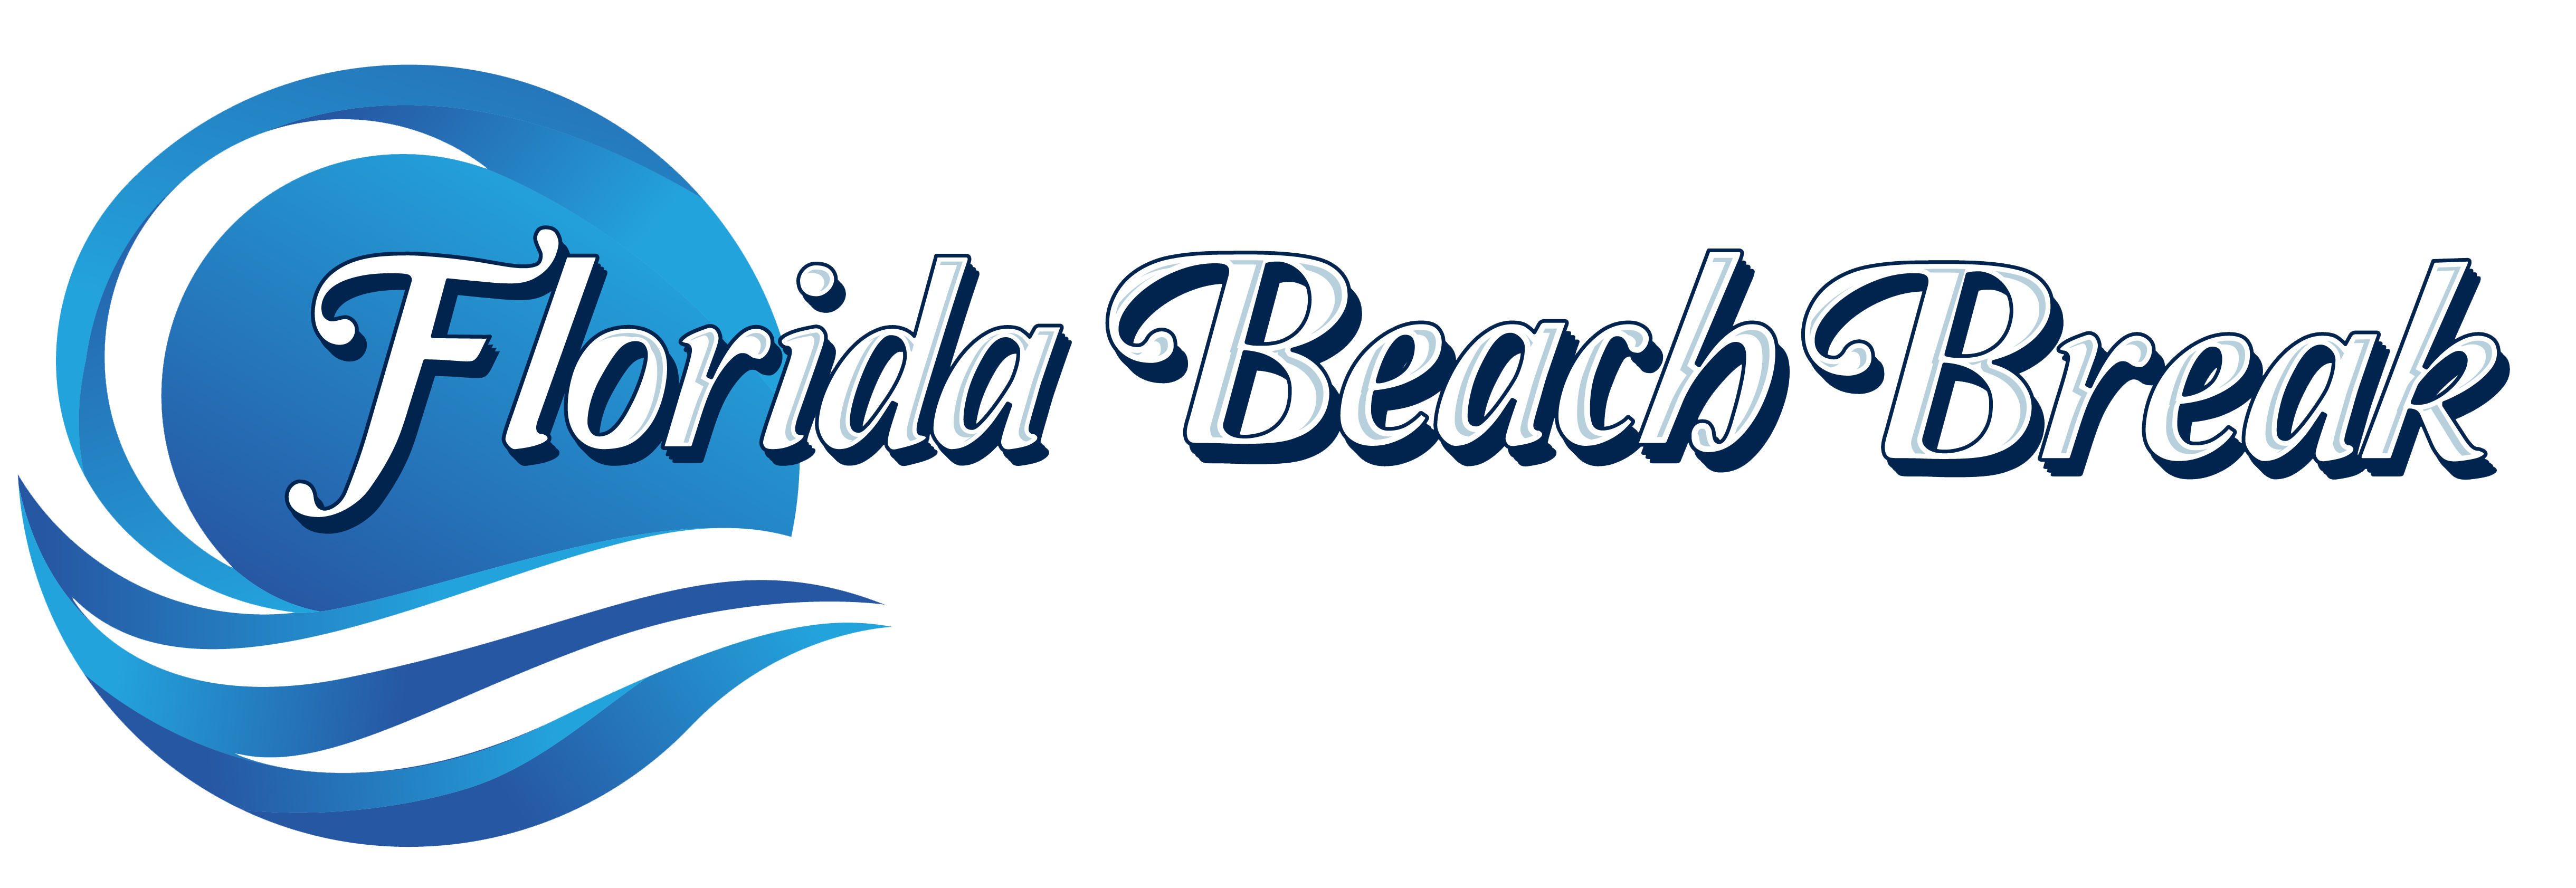 Florida Beach Break